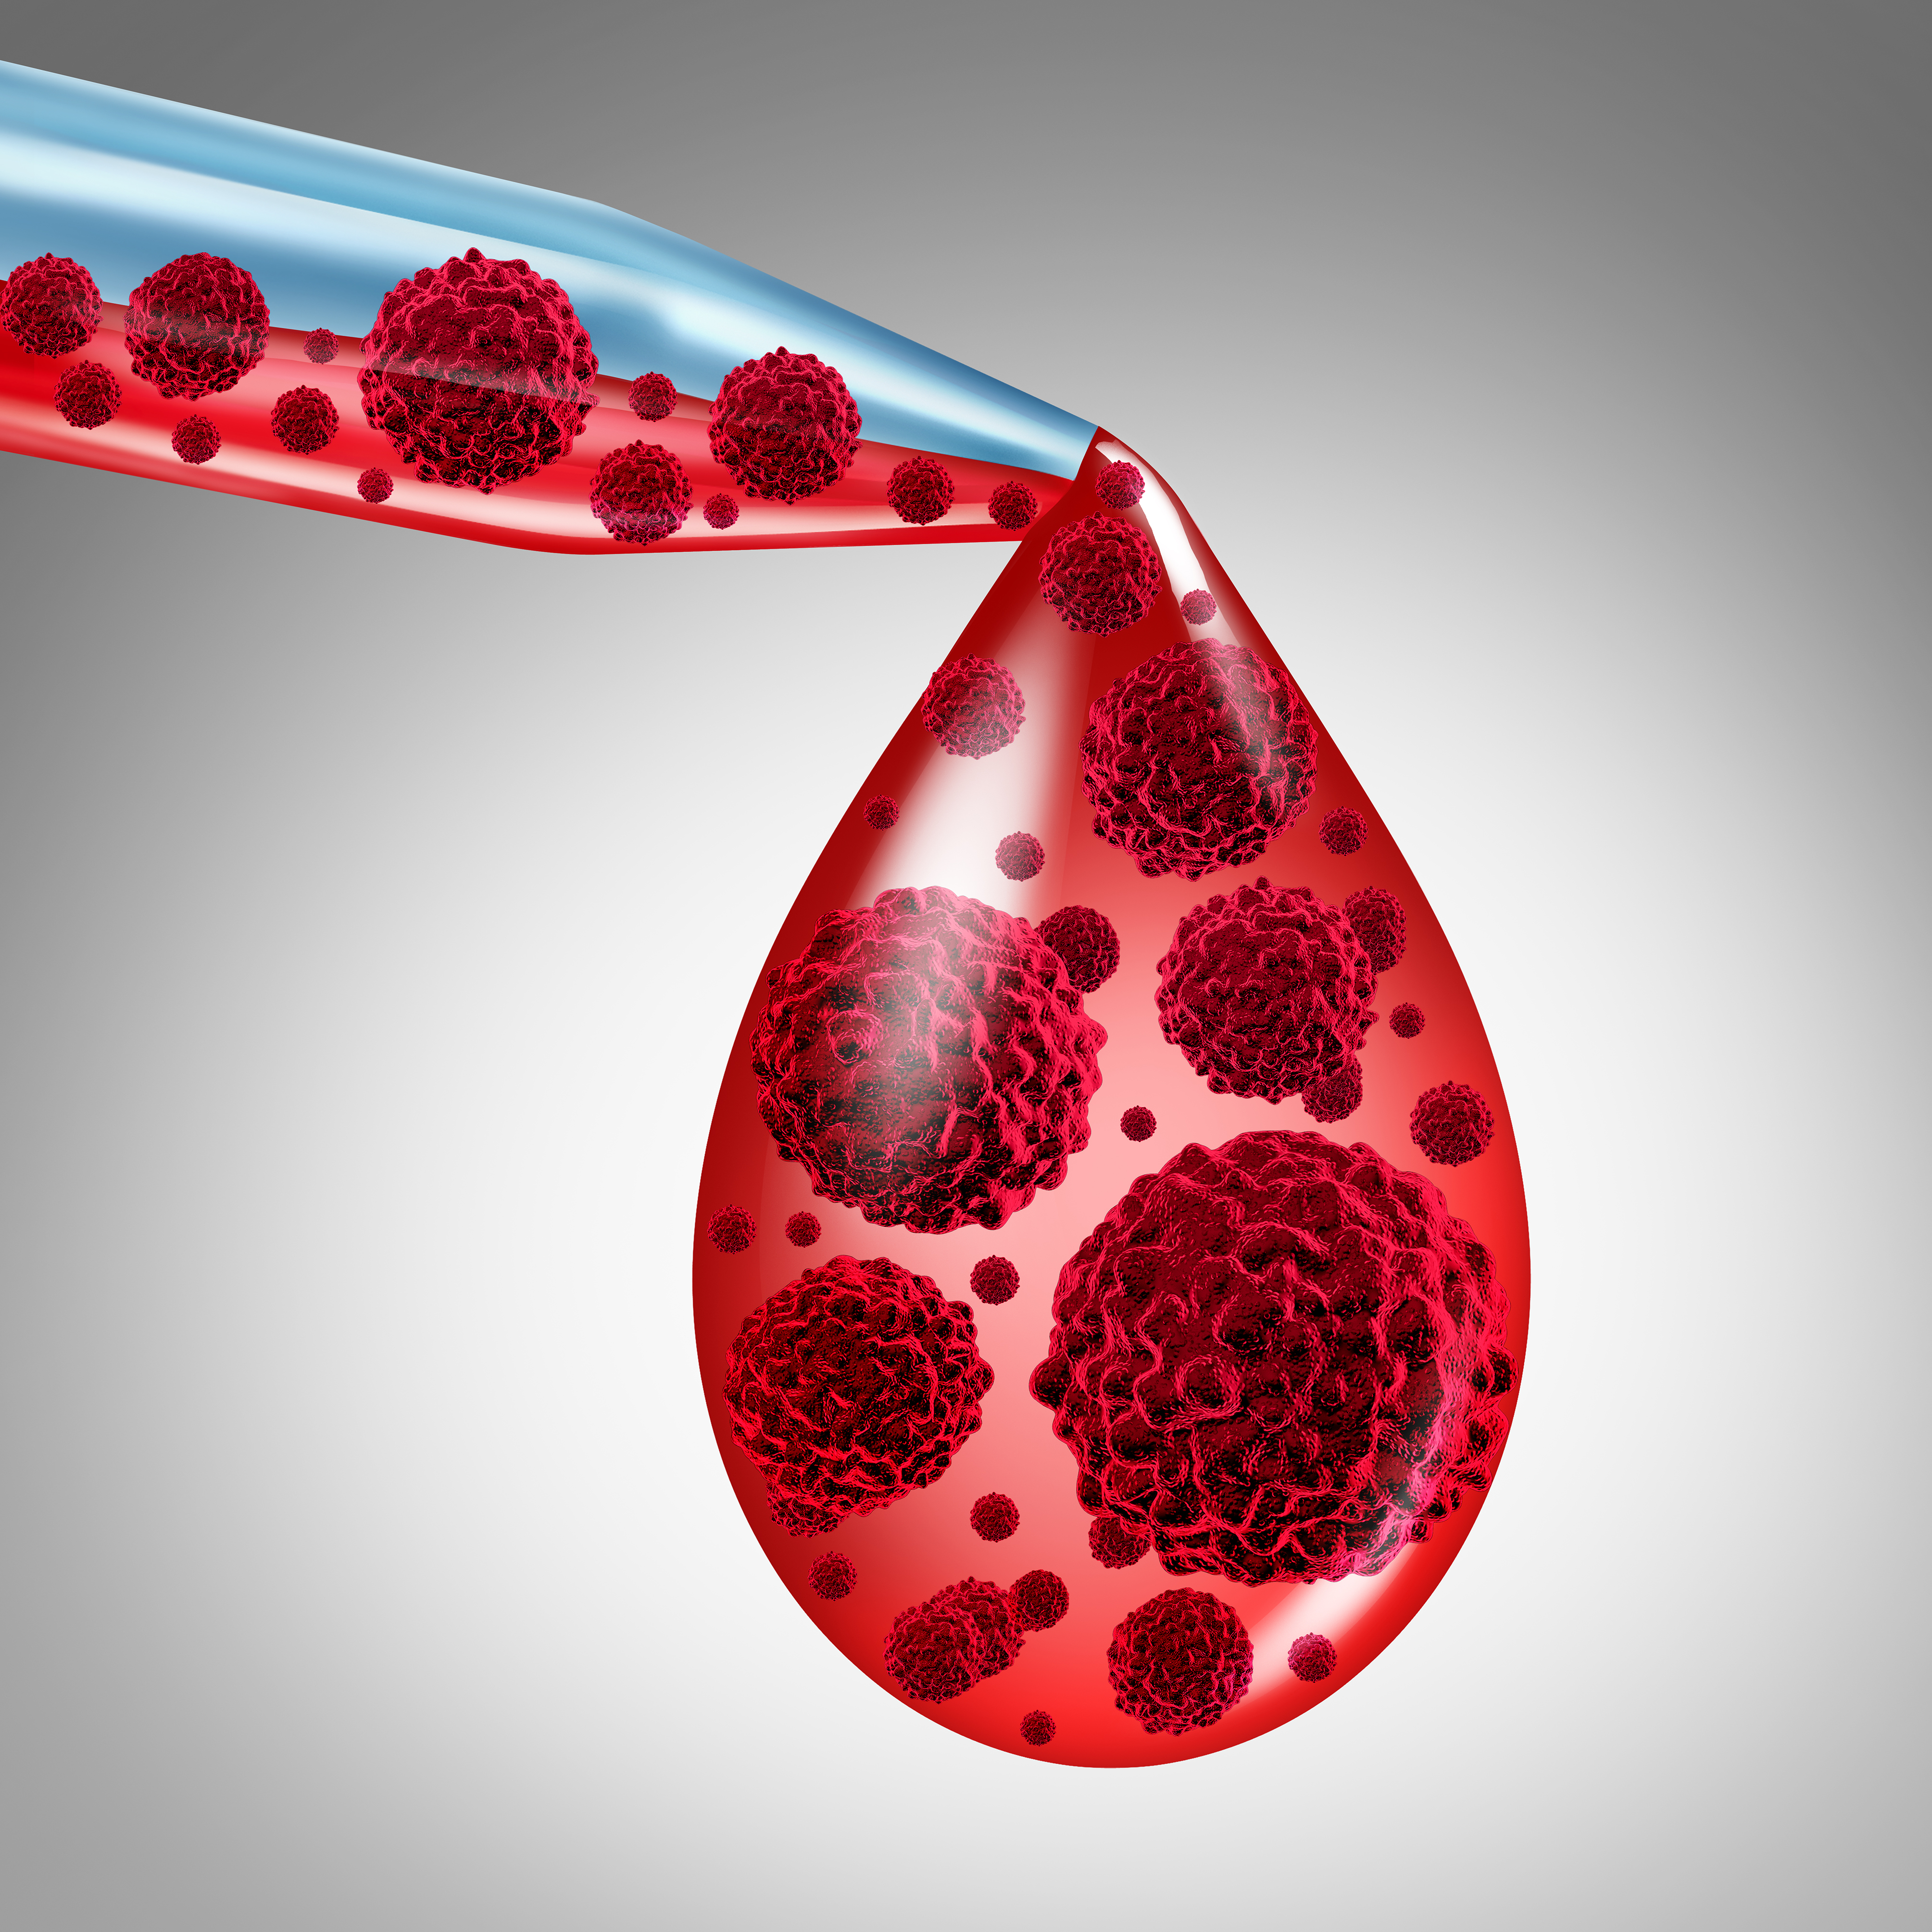 【Leukemia】PD-L1和IDO1<font color="red">高</font>表达与NK/T<font color="red">细胞</font>淋巴瘤生存不佳相关